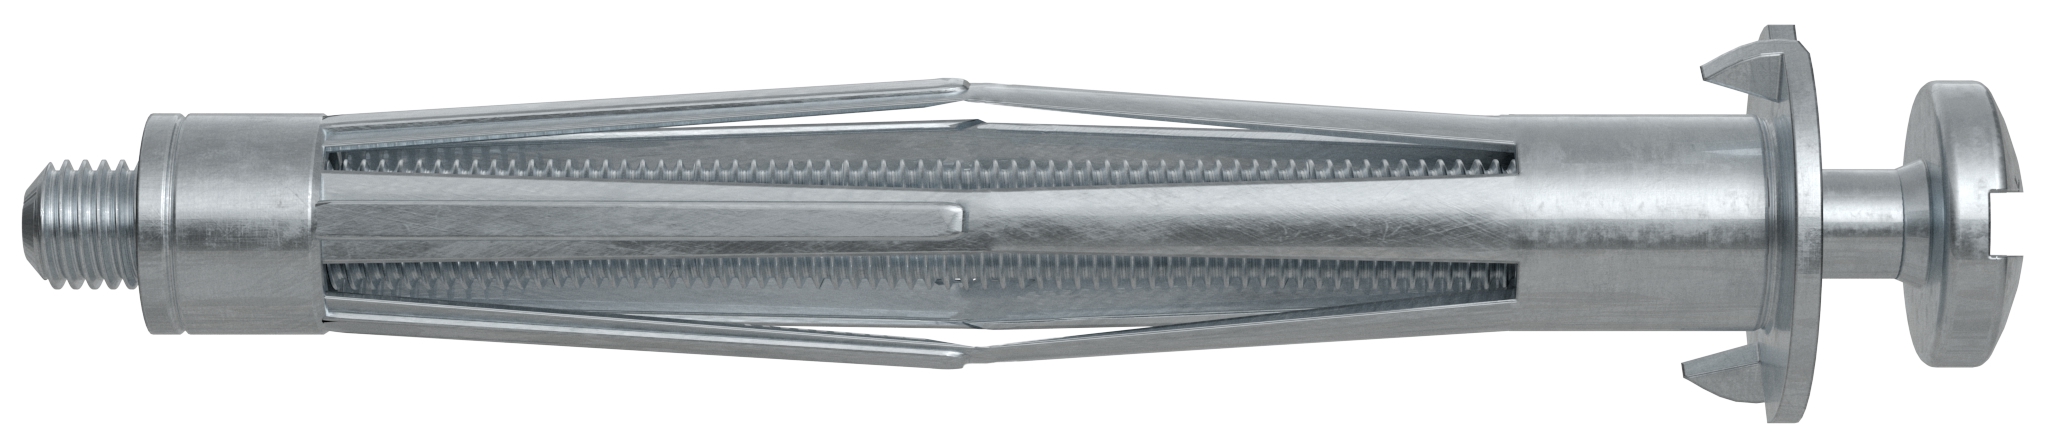 Fischer HM 4 x 45 S B. Der vielseitige Hohlraumdübel aus Metall mit metrischer Schraube.